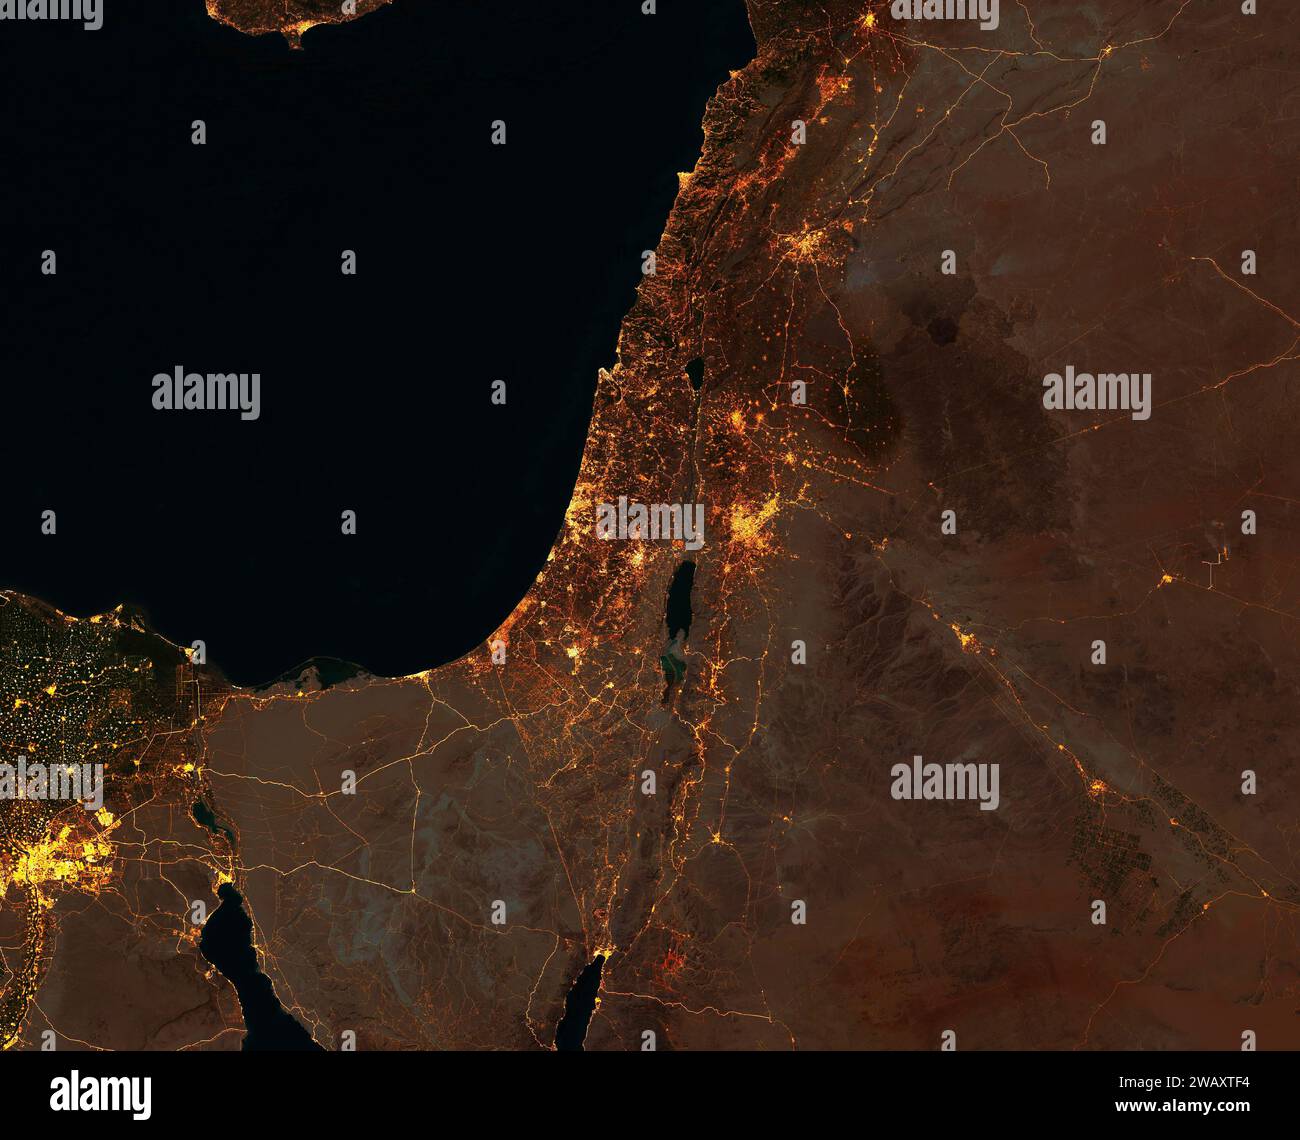 Vista satellitare notturna di Israele, Striscia di Gaza, Cisgiordania, Libano, Siria, Giordania ed Egitto. Luci della città e della strada. Elementi della NASA Foto Stock